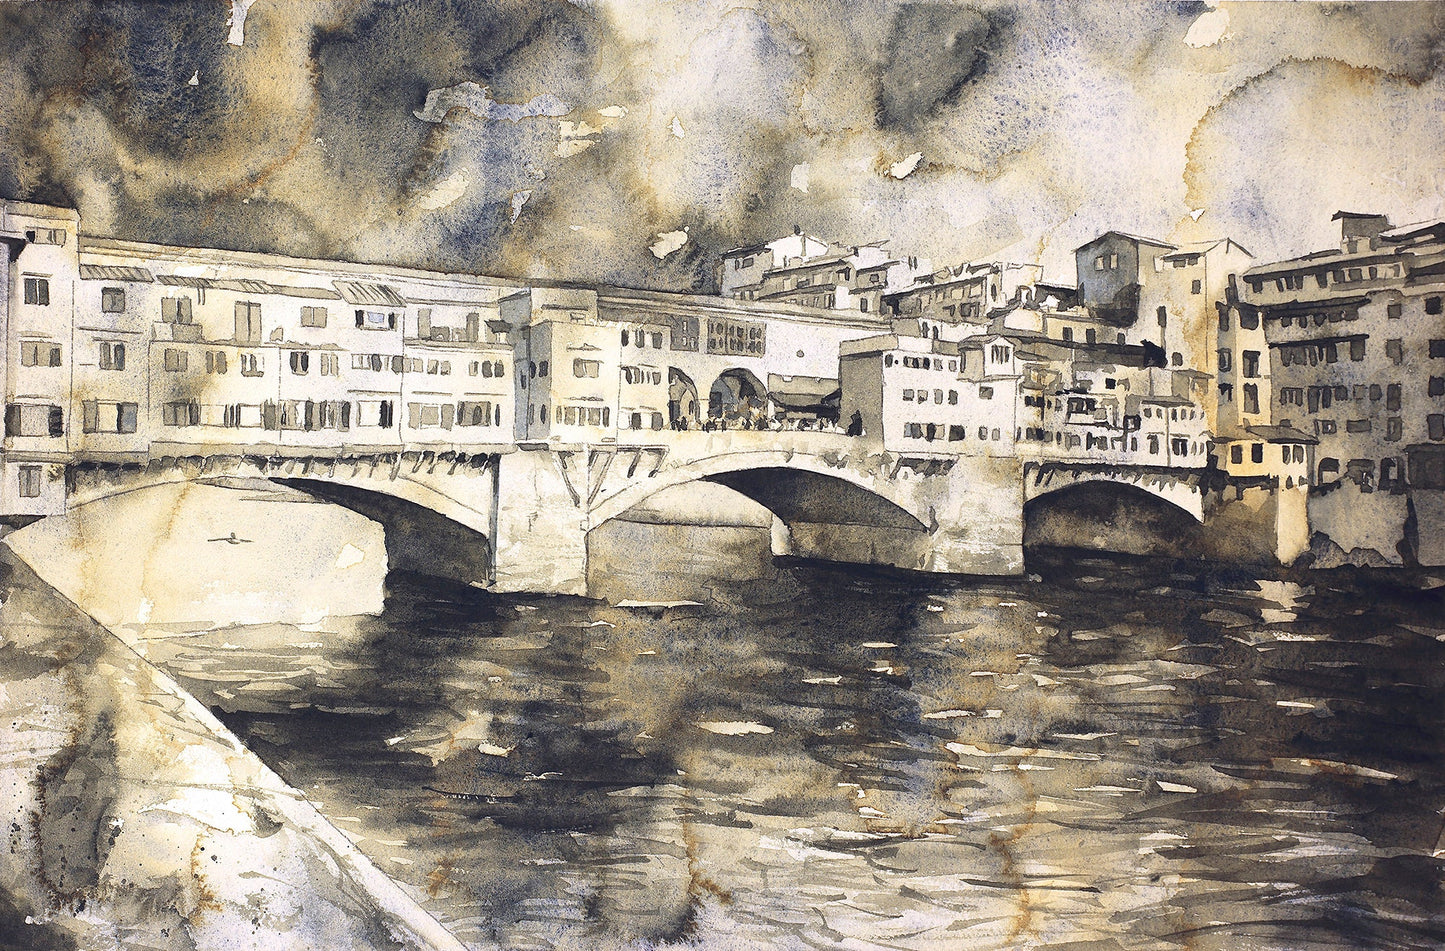 Ponte Vecchio bridge in medieval city of Florence, Italy. Watercolor of Ponte Vecchio, Florence art Italy fine art watercolor decor (print)